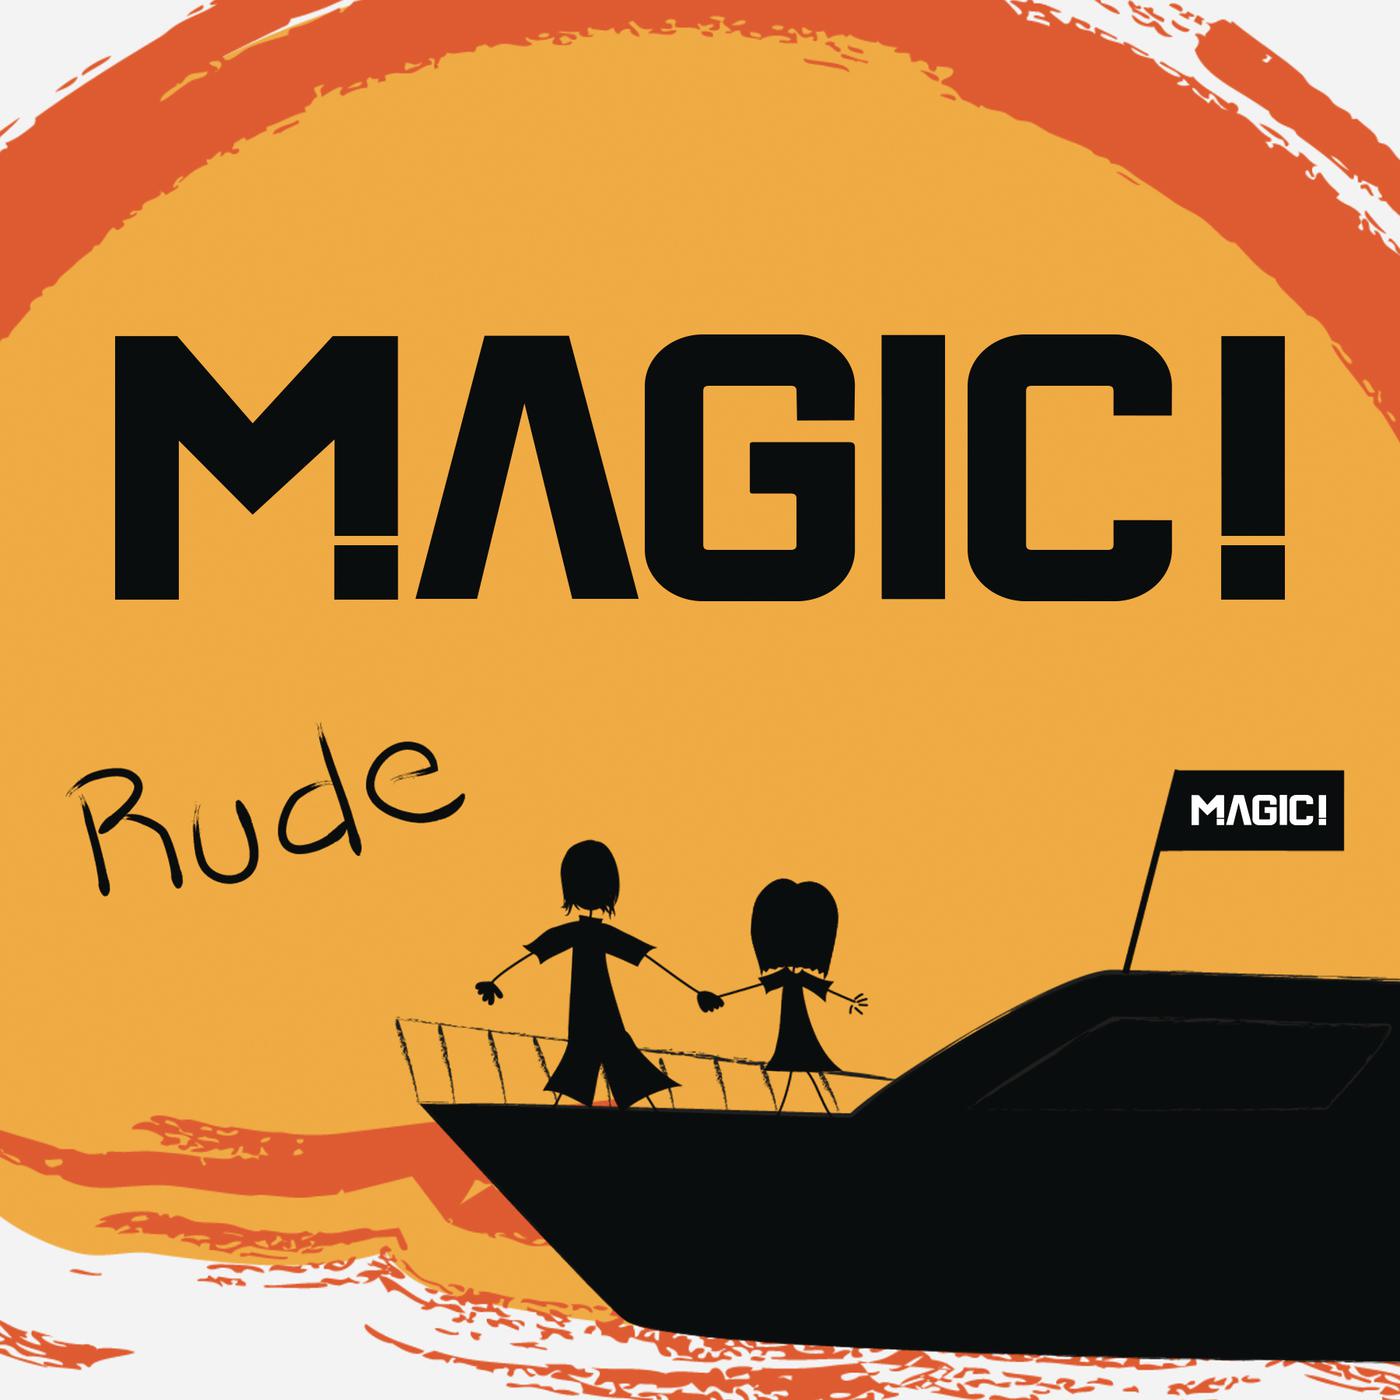 Magic обложка. Magic rude. Группа rude. Обложка песни Magic. Rude трек.